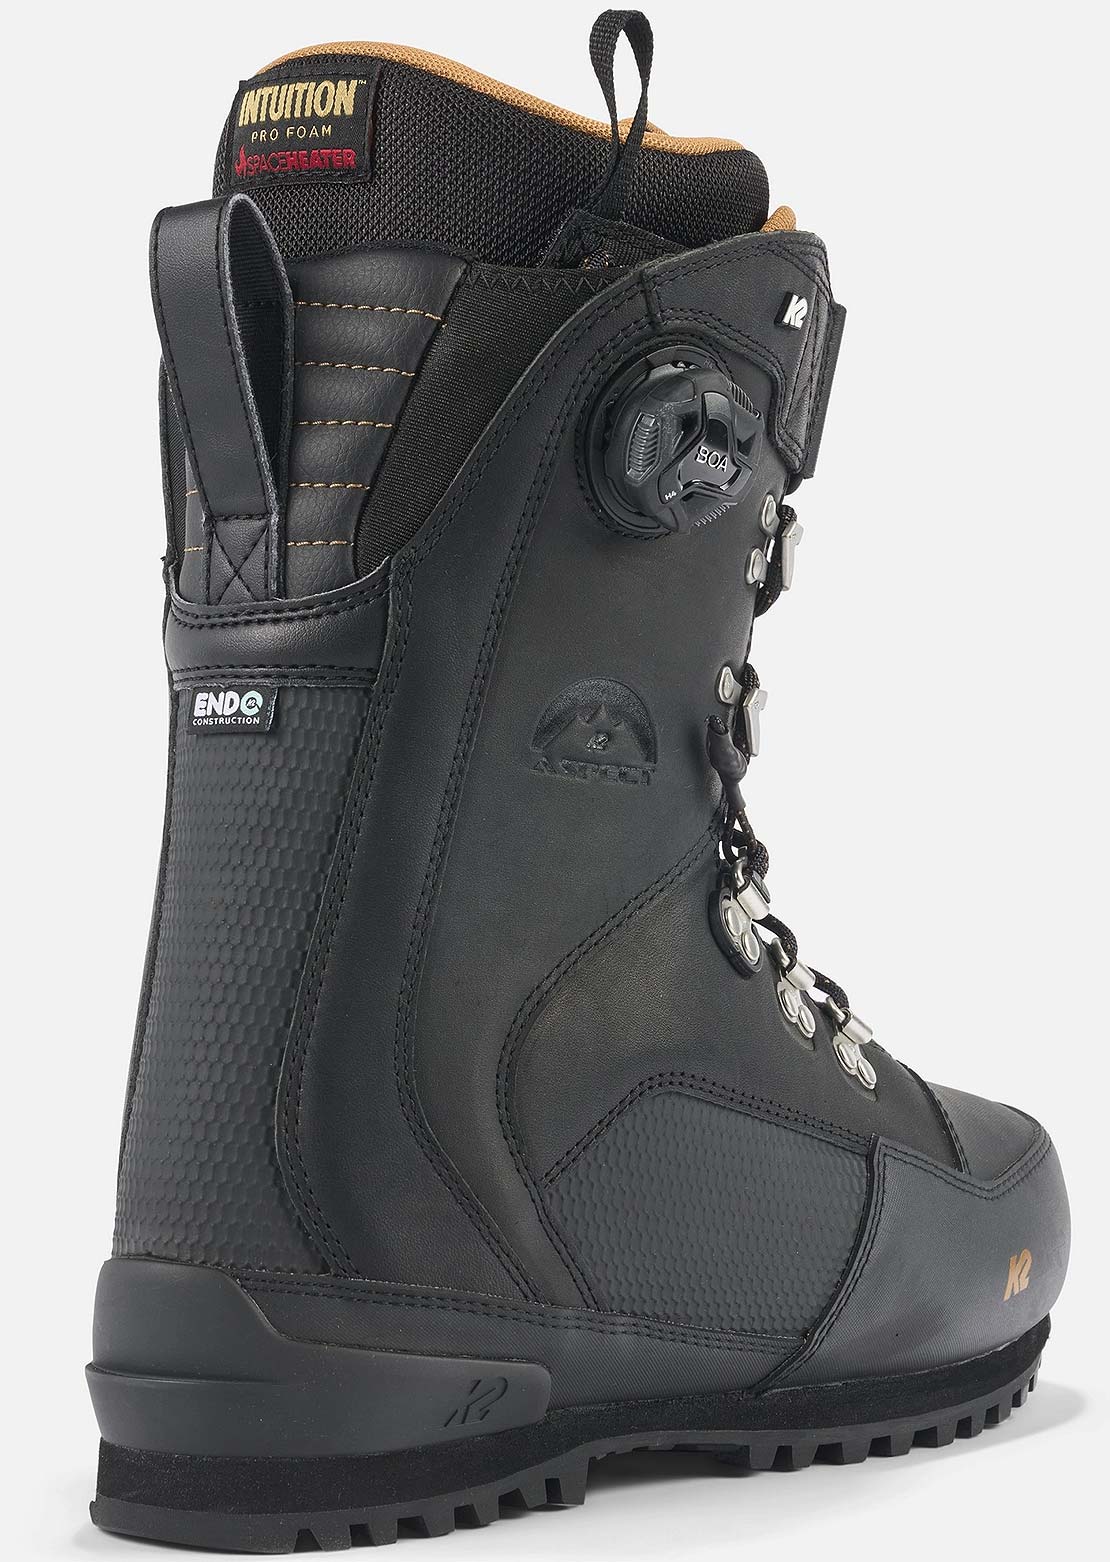 K2 Aspect Splitboard Boots Black